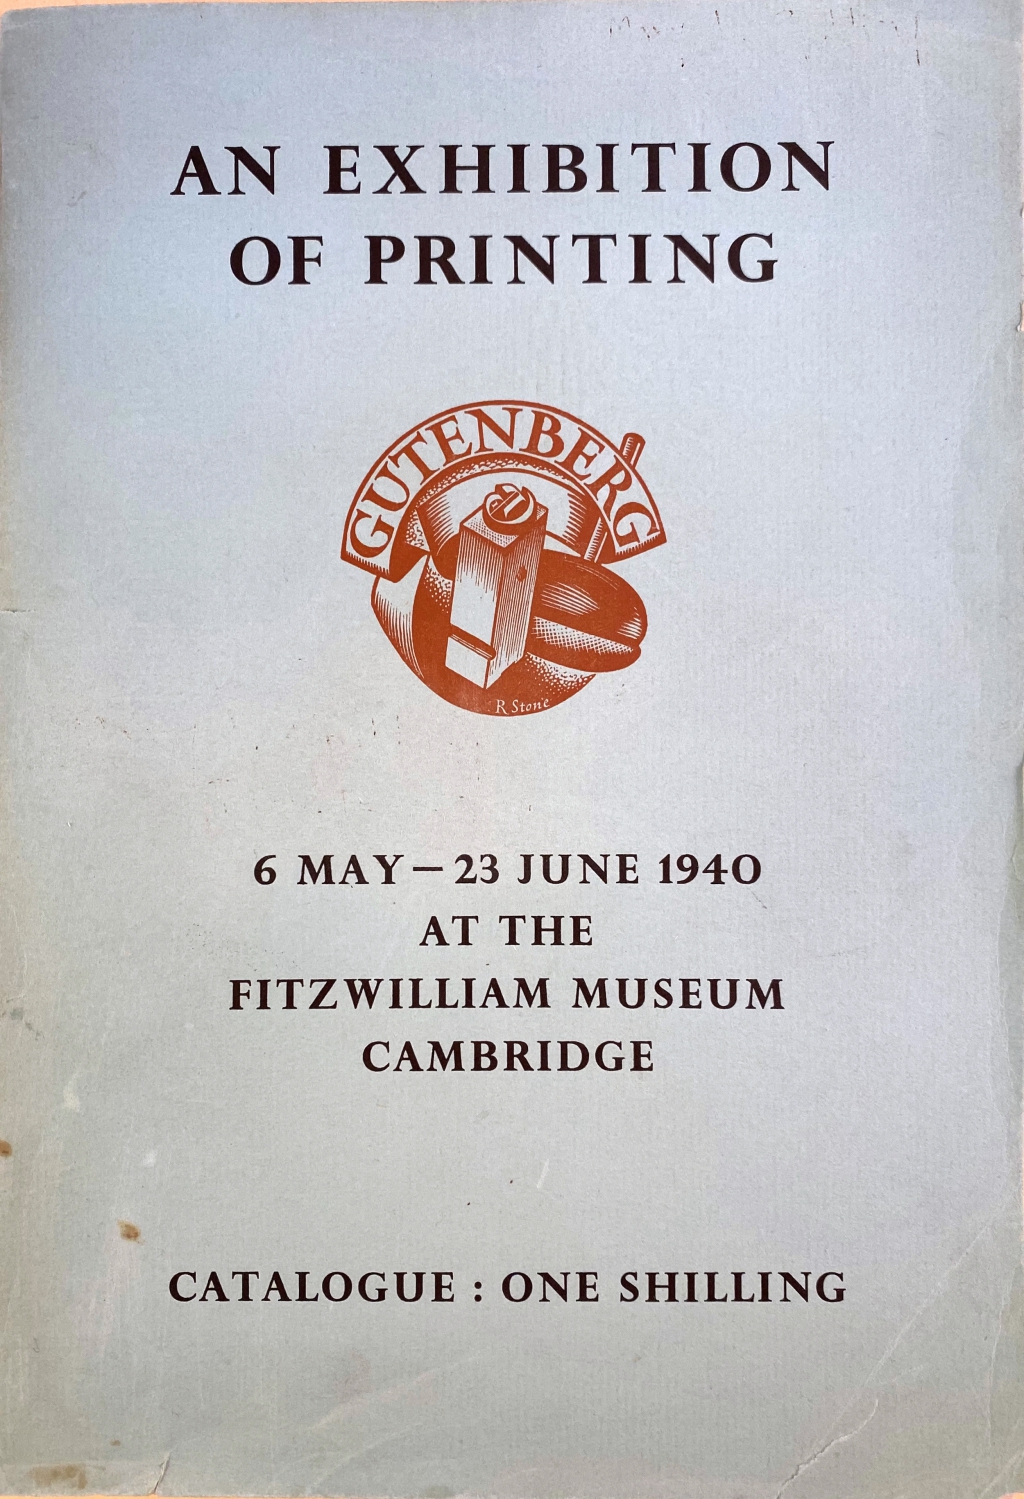 Fitzwilliam Exhibition catalogue cover.